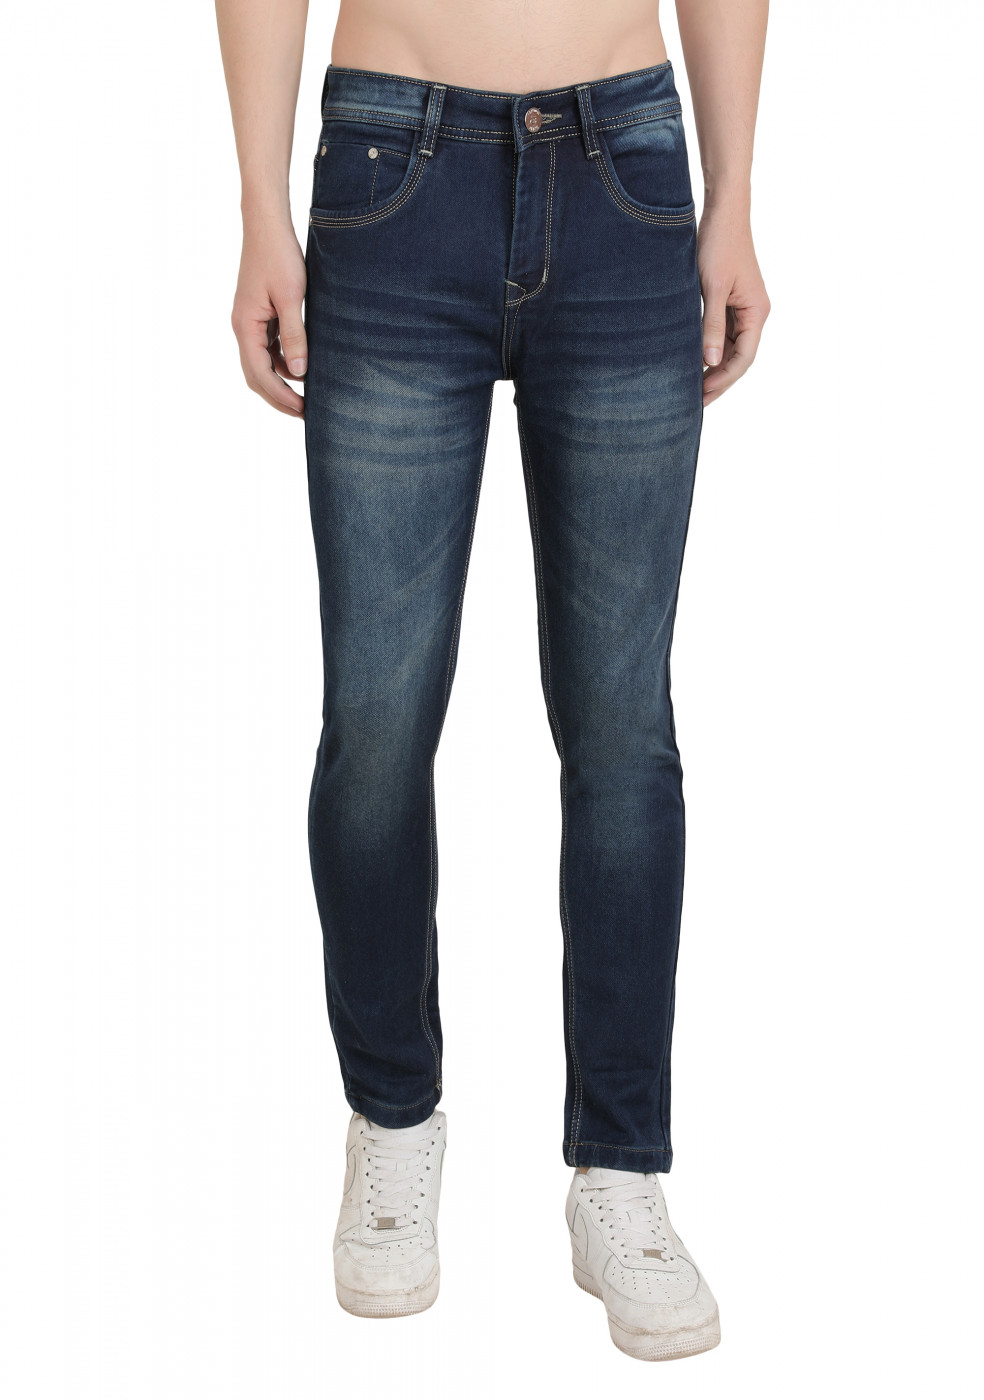 Trendy Blue Denim Jeans For Men